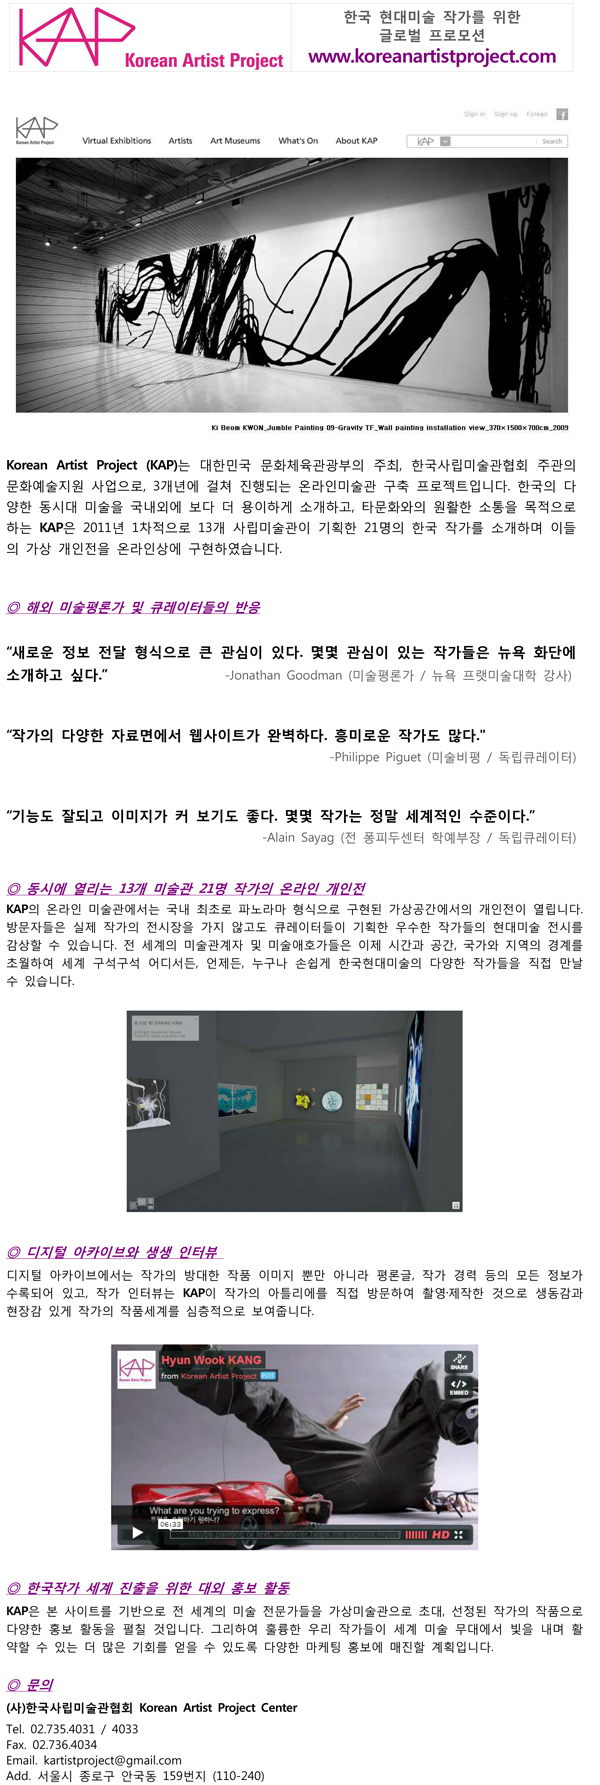 한국현대미술 작가를 위한 글로벌 프로모션 Korean Artist Project 웹사이트 오픈!! 이미지